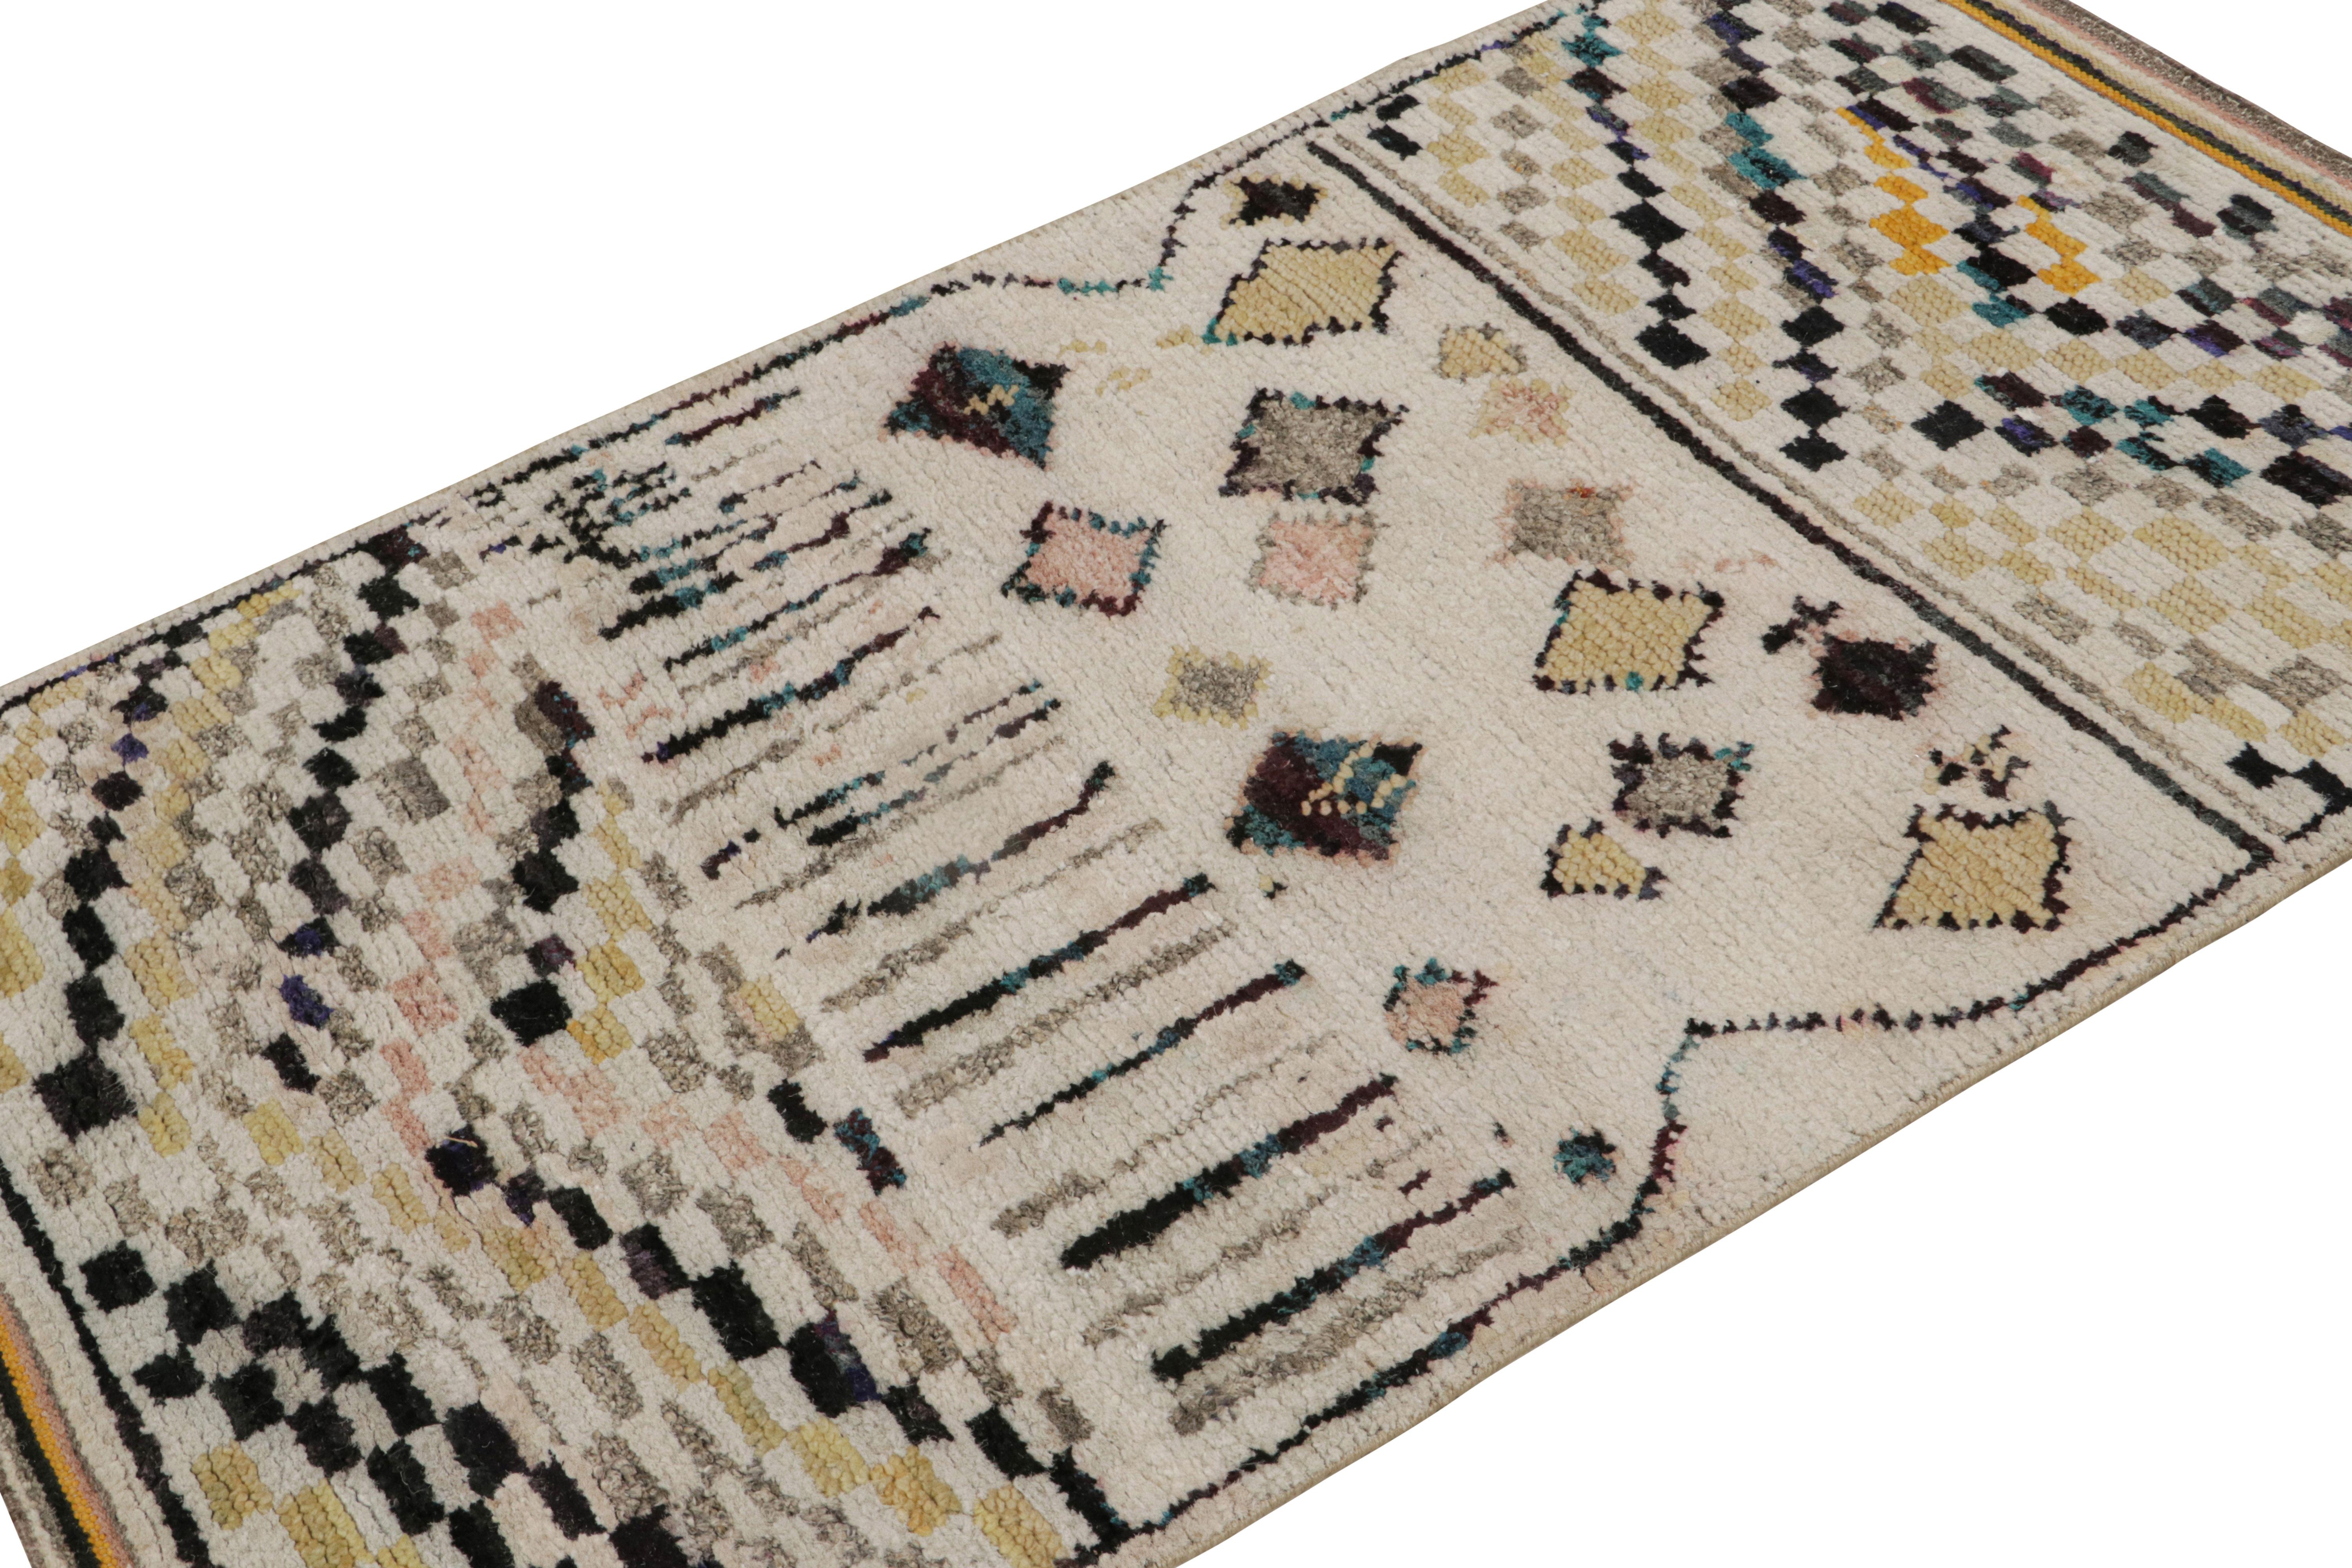 Noué à la main en laine, soie et coton, ce tapis contemporain 3x5 de style marocain aux motifs géométriques berbères primitivistes illustre la vision de l'esthétique contemporaine de Rug & Kilim. 

Sur le Design : 

Les connaisseurs peuvent admirer